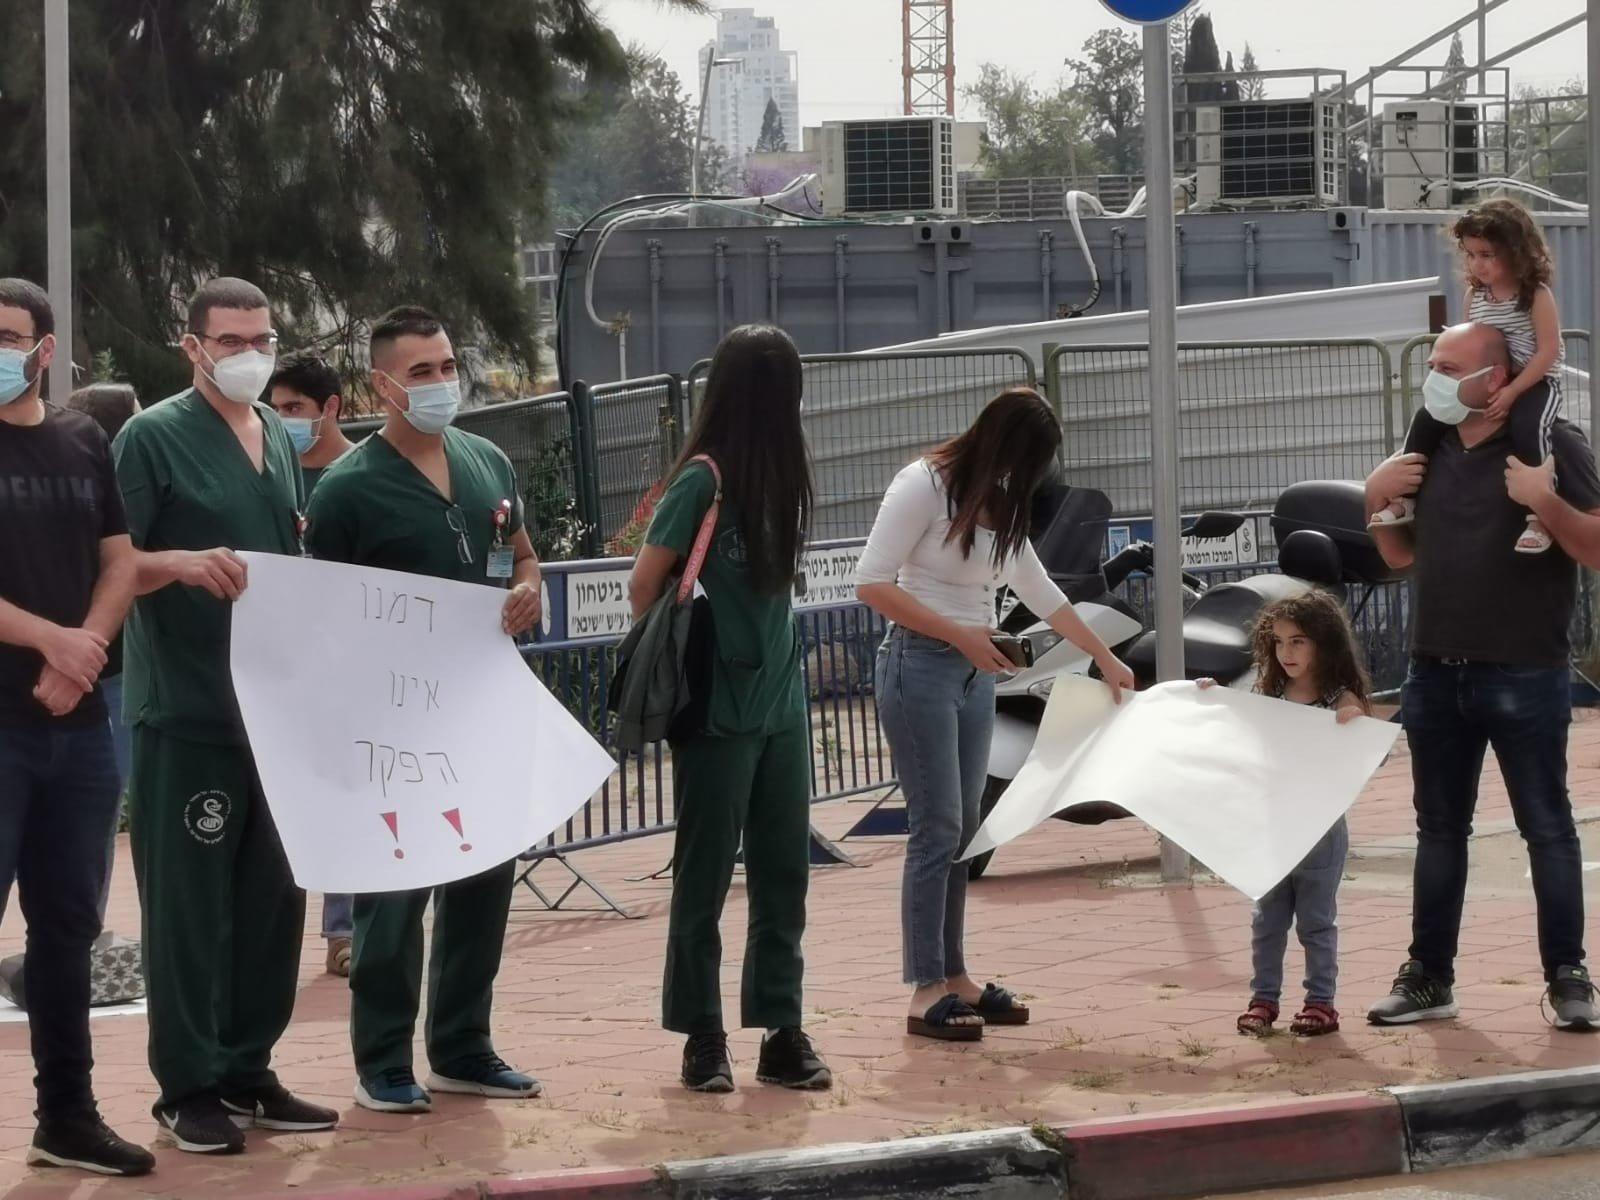 تظاهرة مقابل مستشفى تل هشومير تنديدًا بقتل يونس دون رحمة او شفقة -2